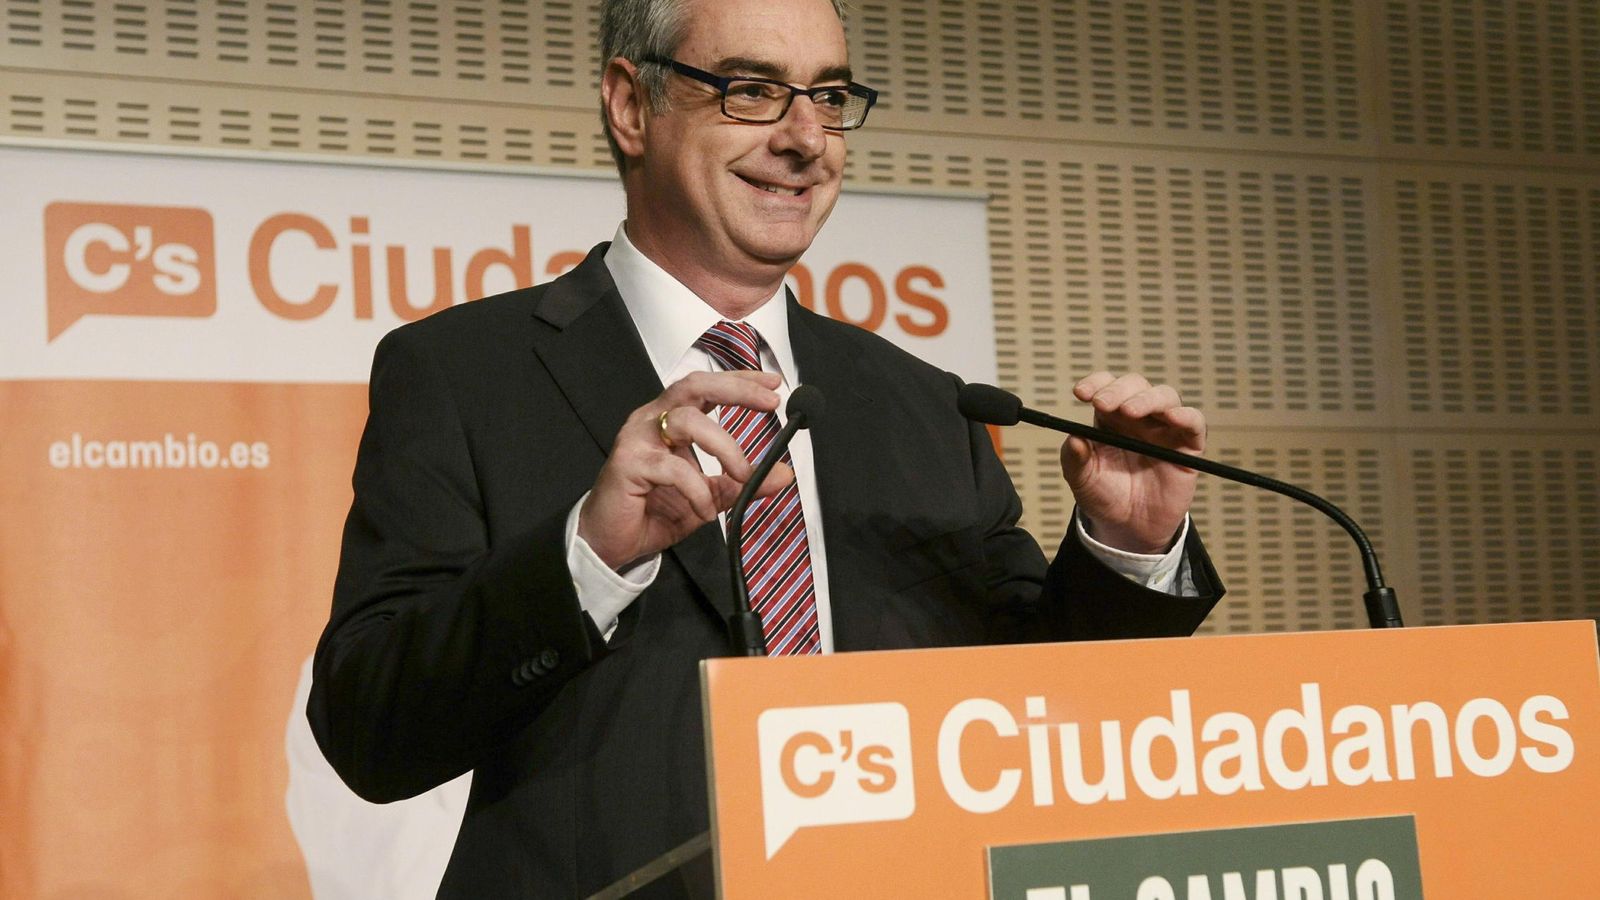 Foto: El director de las campañas electorales de C's, José Manuel Villegas. (Efe/Raúl Carro)